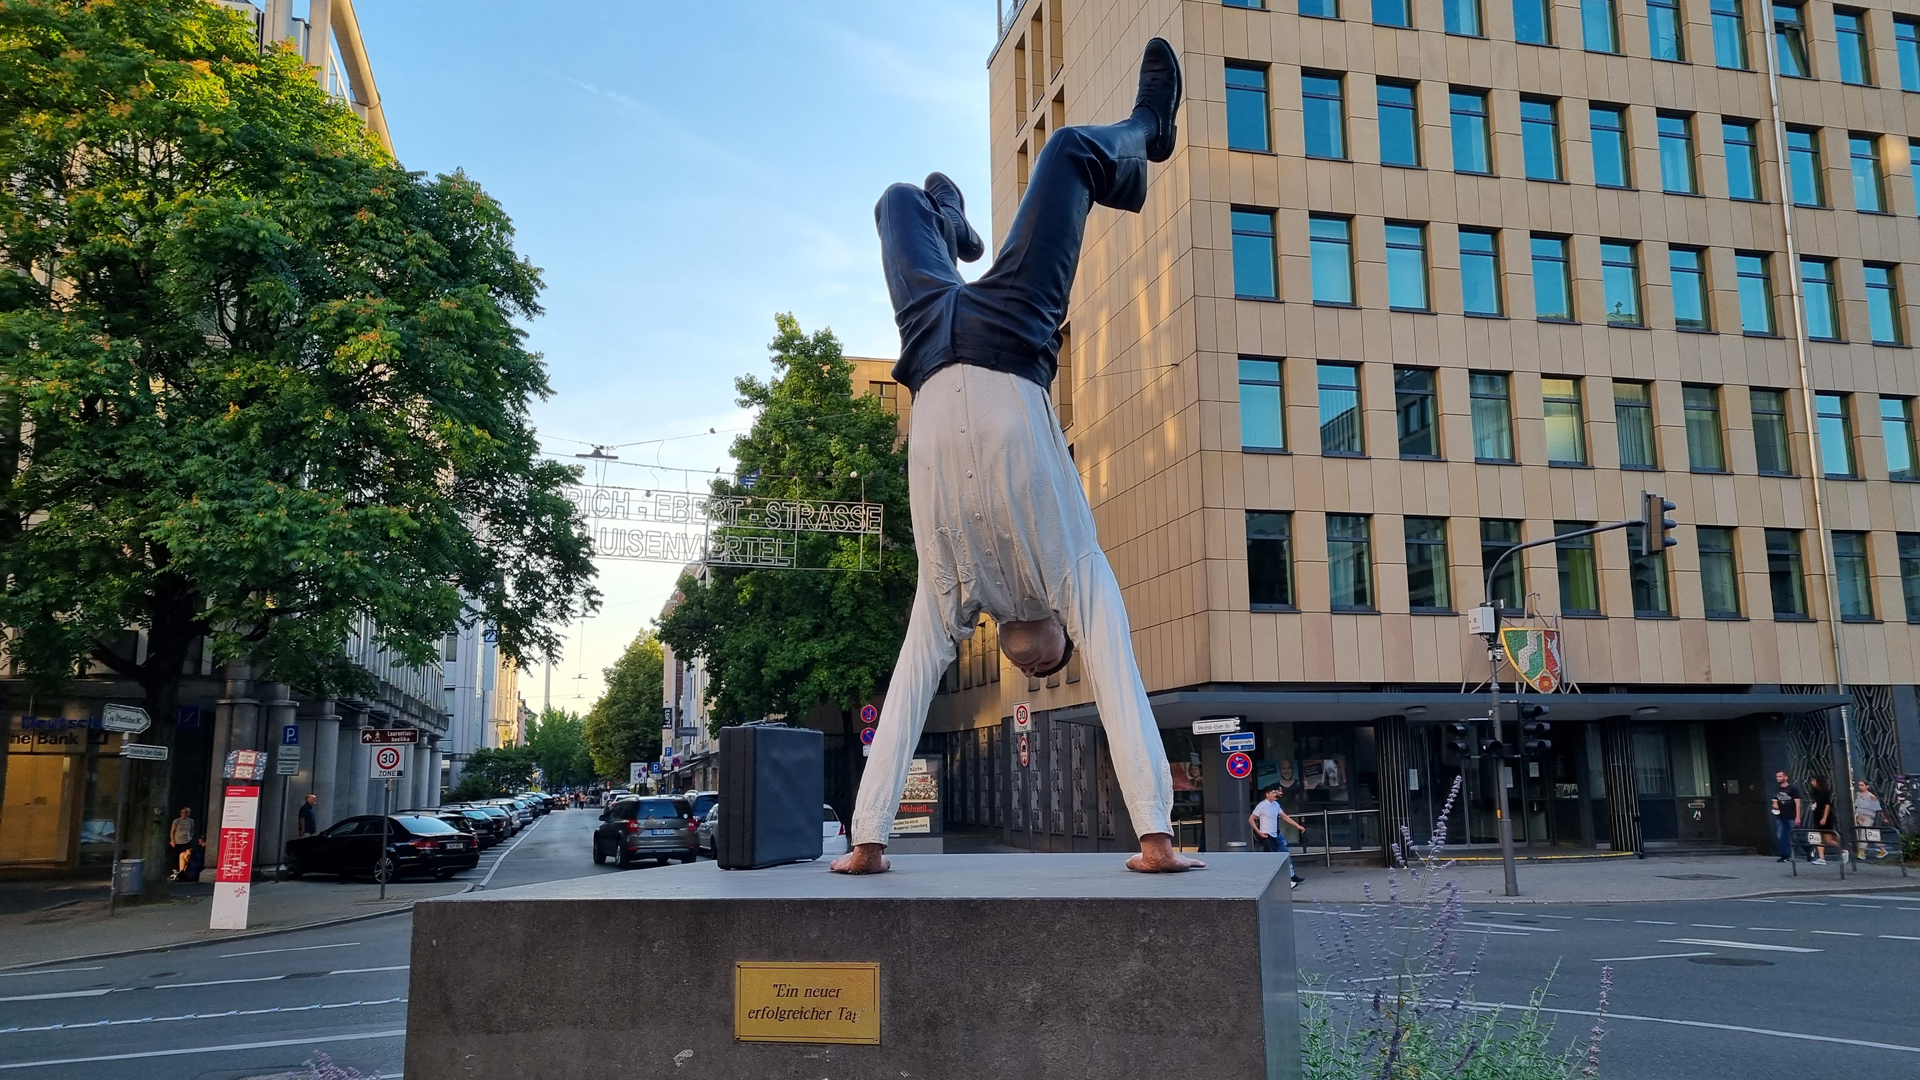 Fotostrecke Mein Europa 20: Skulptur Ein neuer erfolgreicher Tag von Guillaume Bijl in Wuppertal